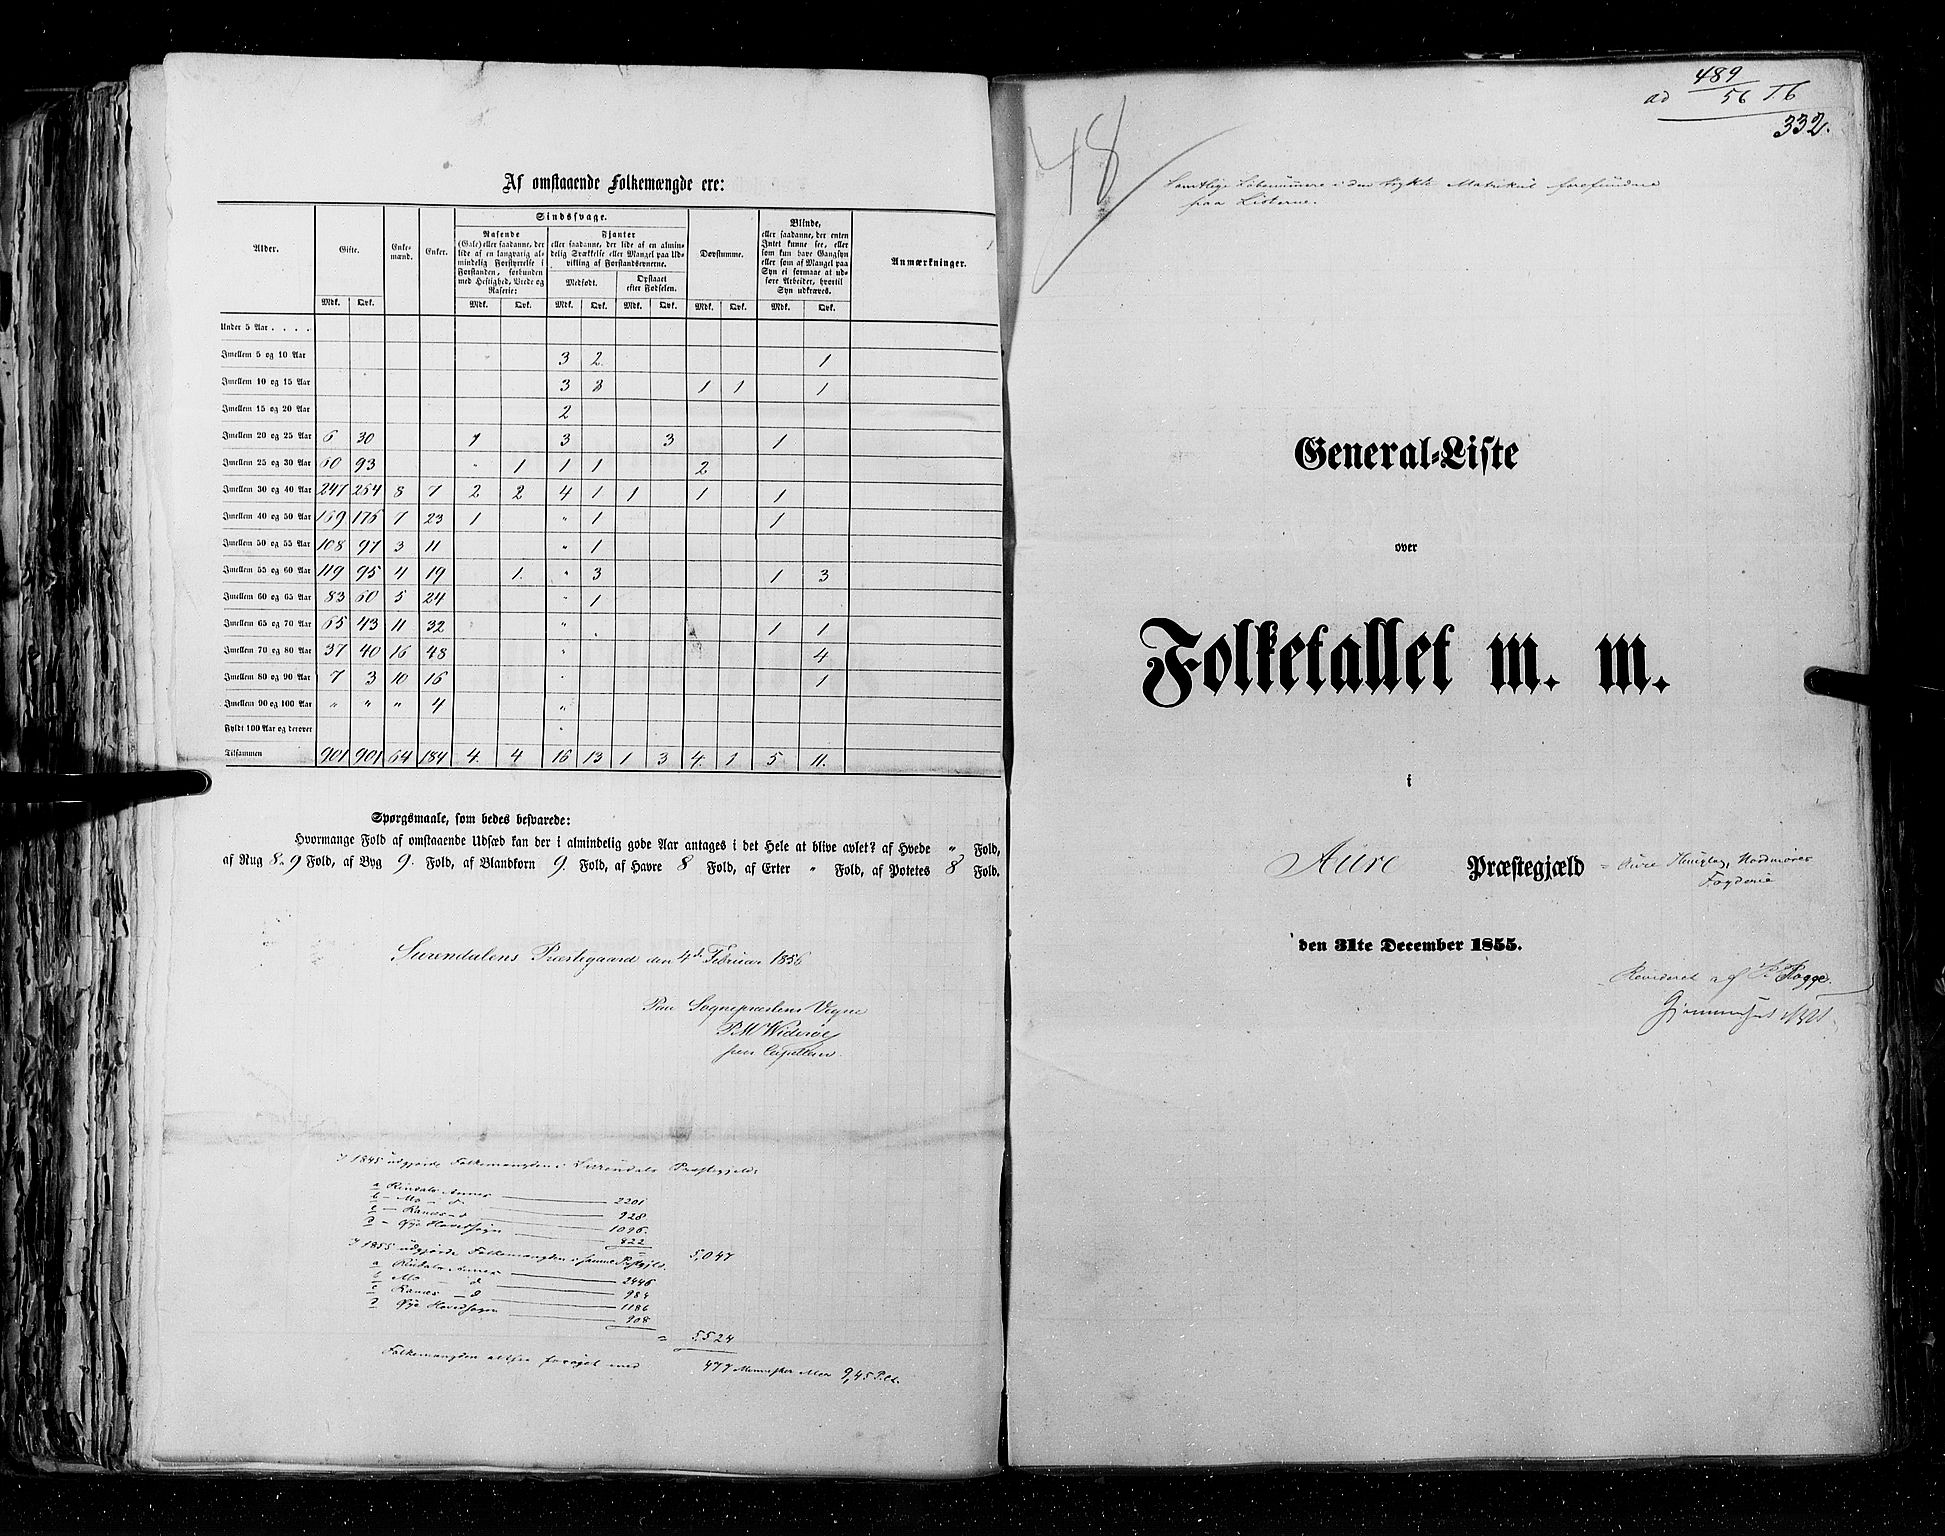 RA, Census 1855, vol. 5: Nordre Bergenhus amt, Romsdal amt og Søndre Trondhjem amt, 1855, p. 332